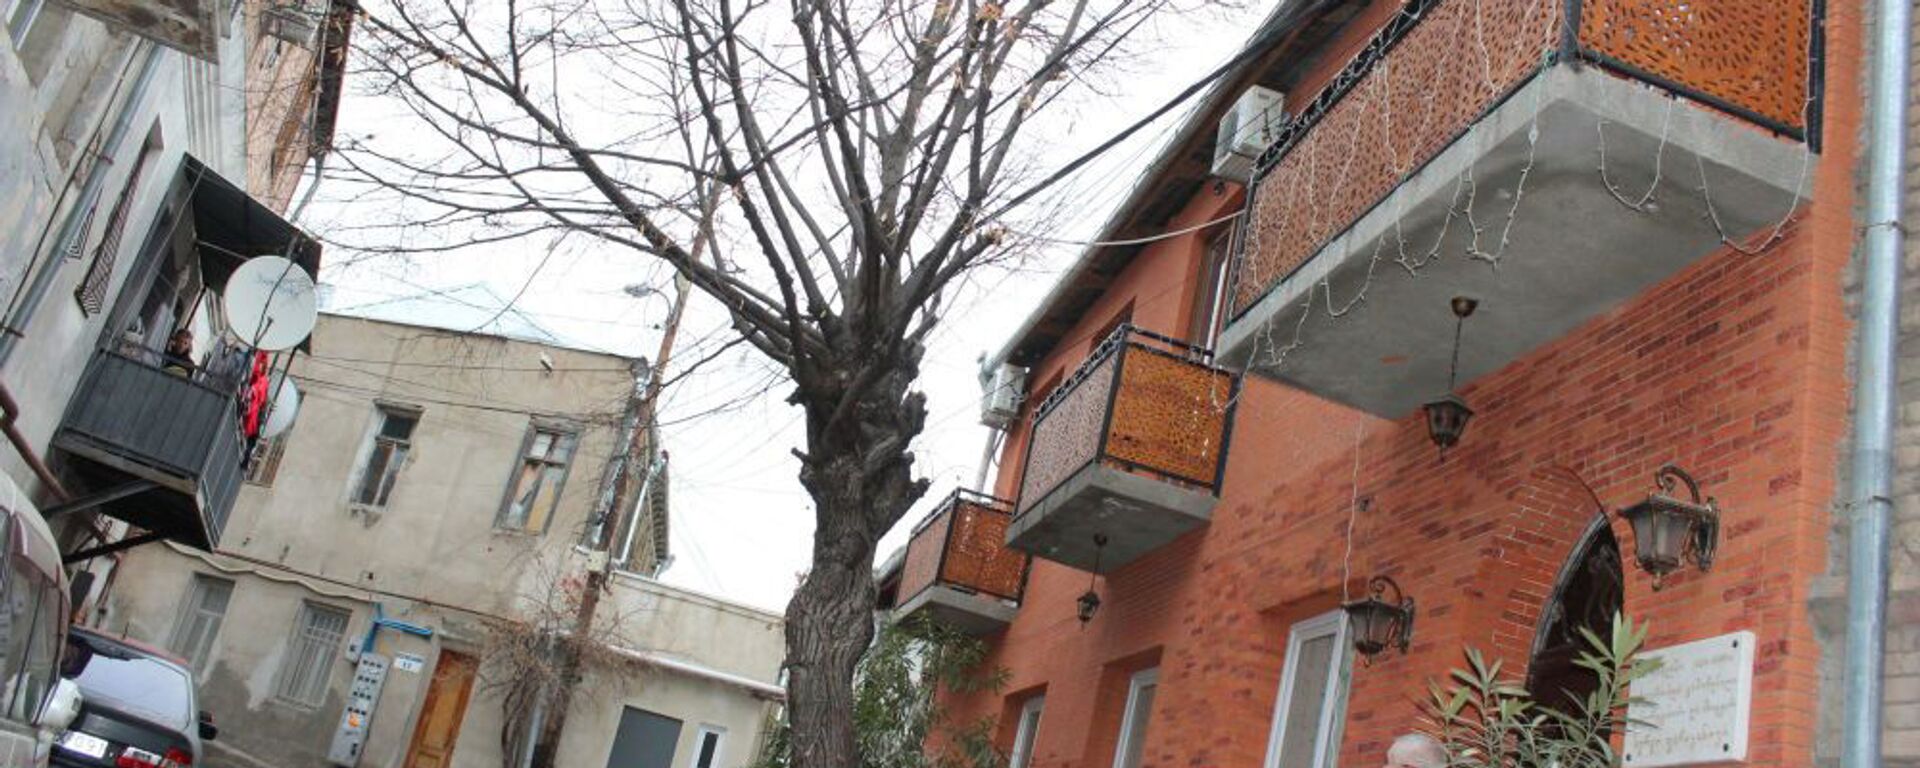 Дом Параджанова находится по адресу Котэ Месхи 7 - Sputnik Армения, 1920, 09.09.2021